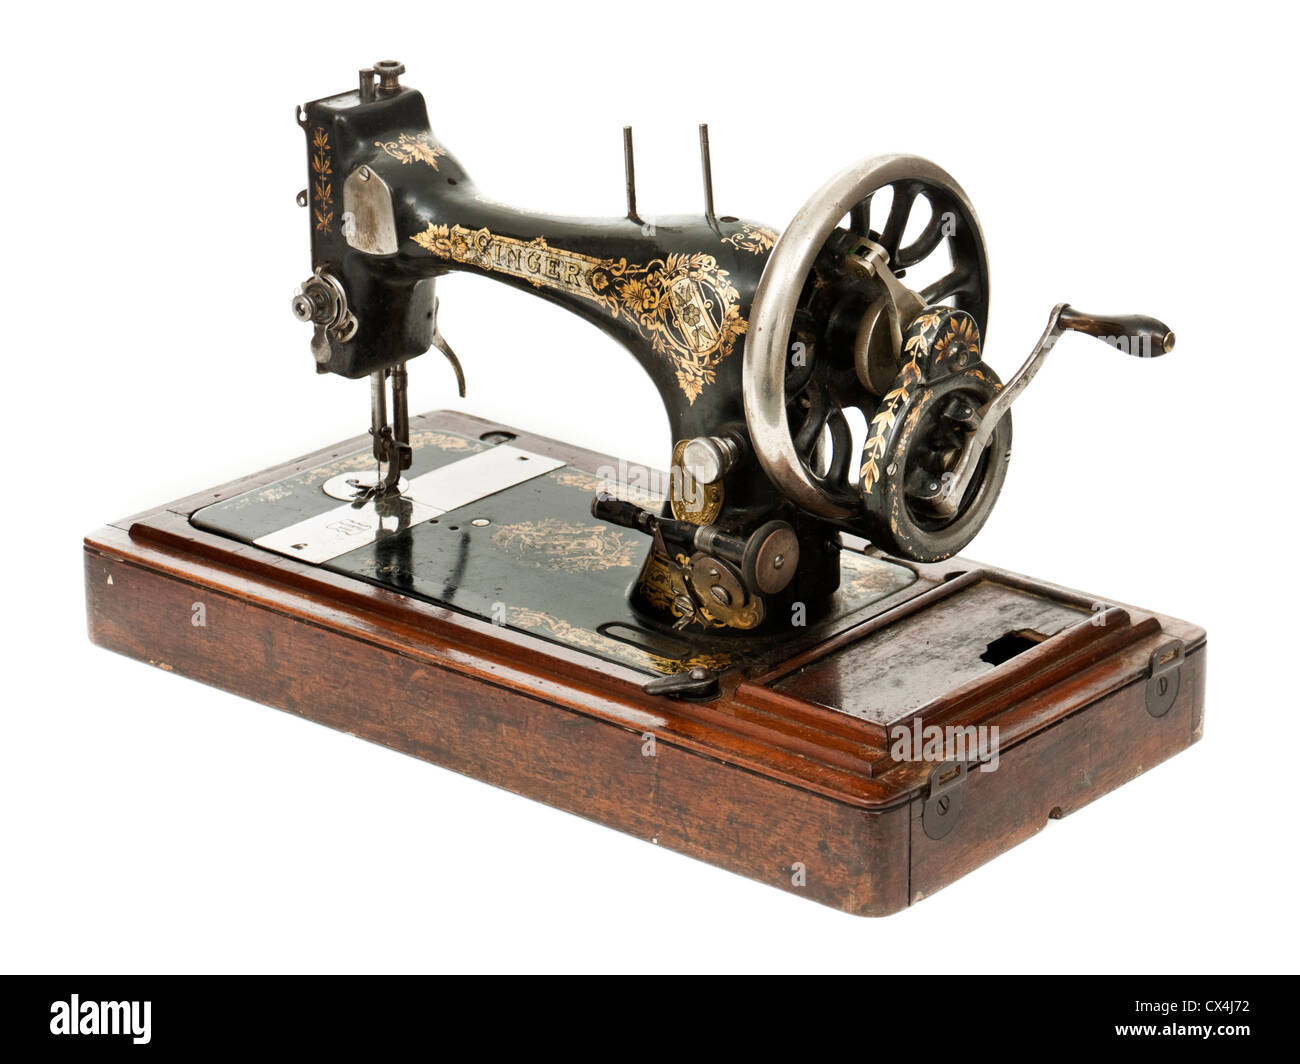 Singer machine à coudre manuelle antique Banque D'Images